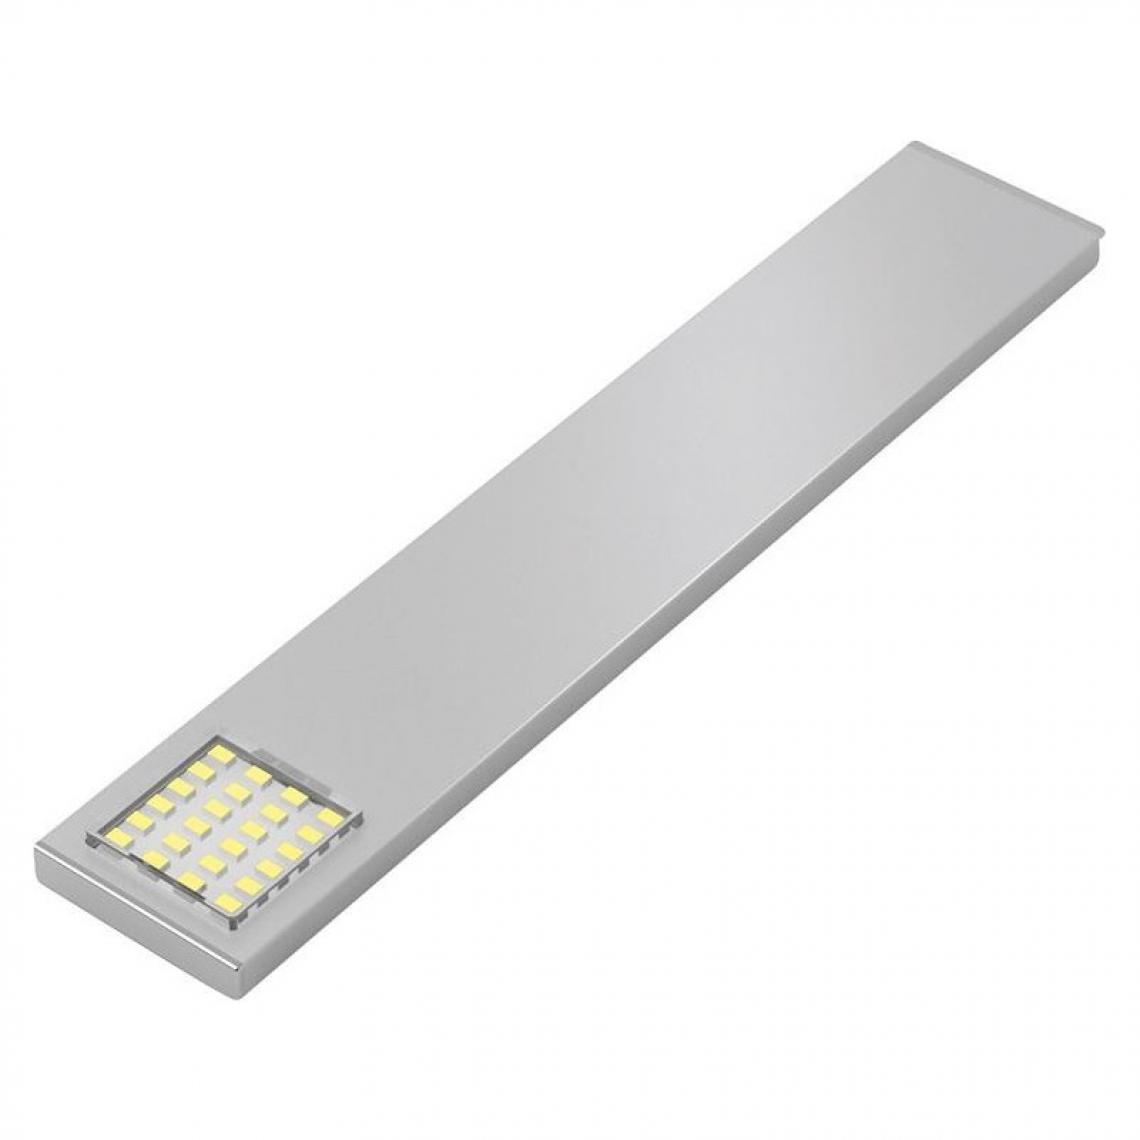 marque generique - Luminaire LED 180mm ww Alu, 12VDC, 1.8W, 1.8m - Ampoules LED